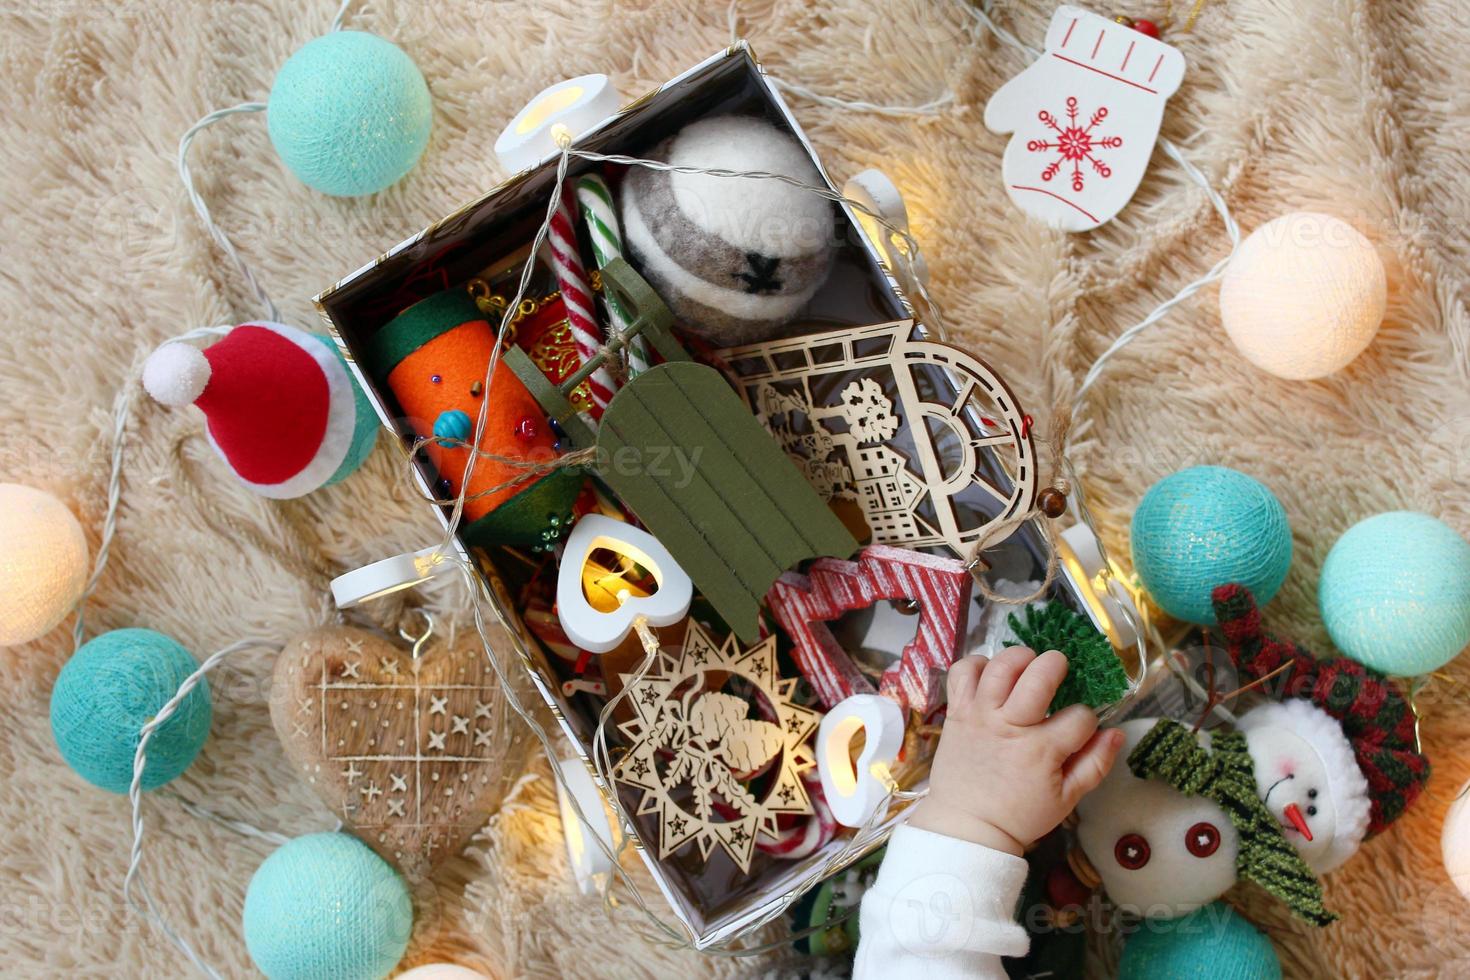 kiste mit bunten holz- und filzweihnachtsdekorationen und weihnachtslichtern mit der hand des kleinen kindes auf einer weichen beige decke, draufsicht. foto